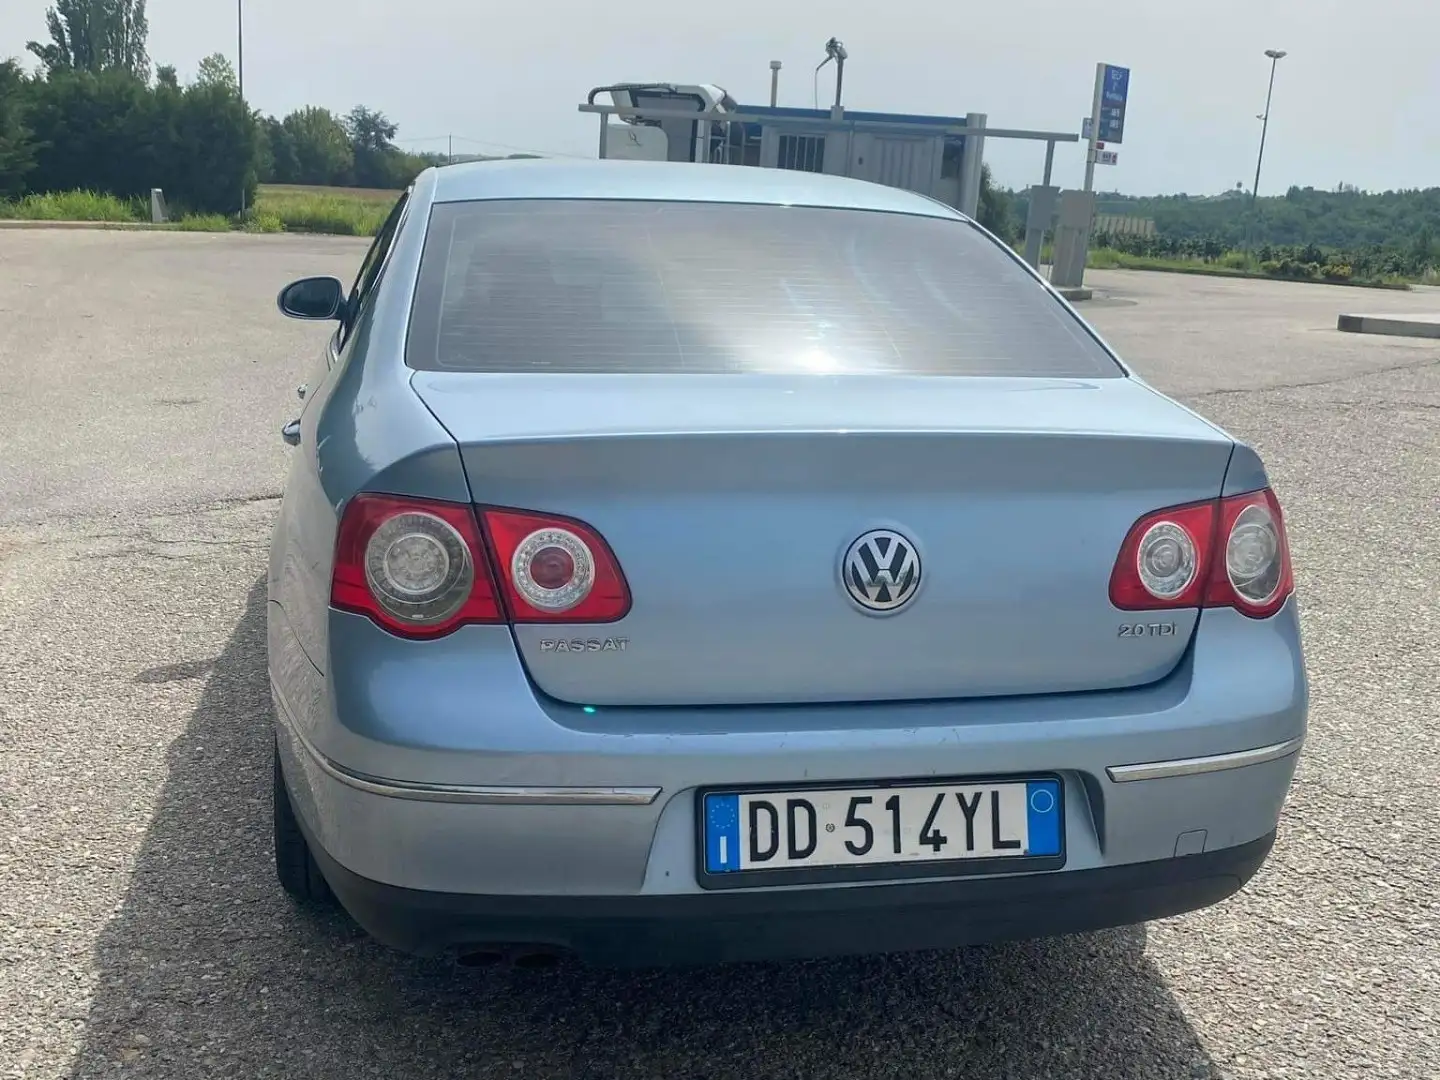 Volkswagen Passat 2.0 tdi Comfortline dsg dpf Gümüş rengi - 2